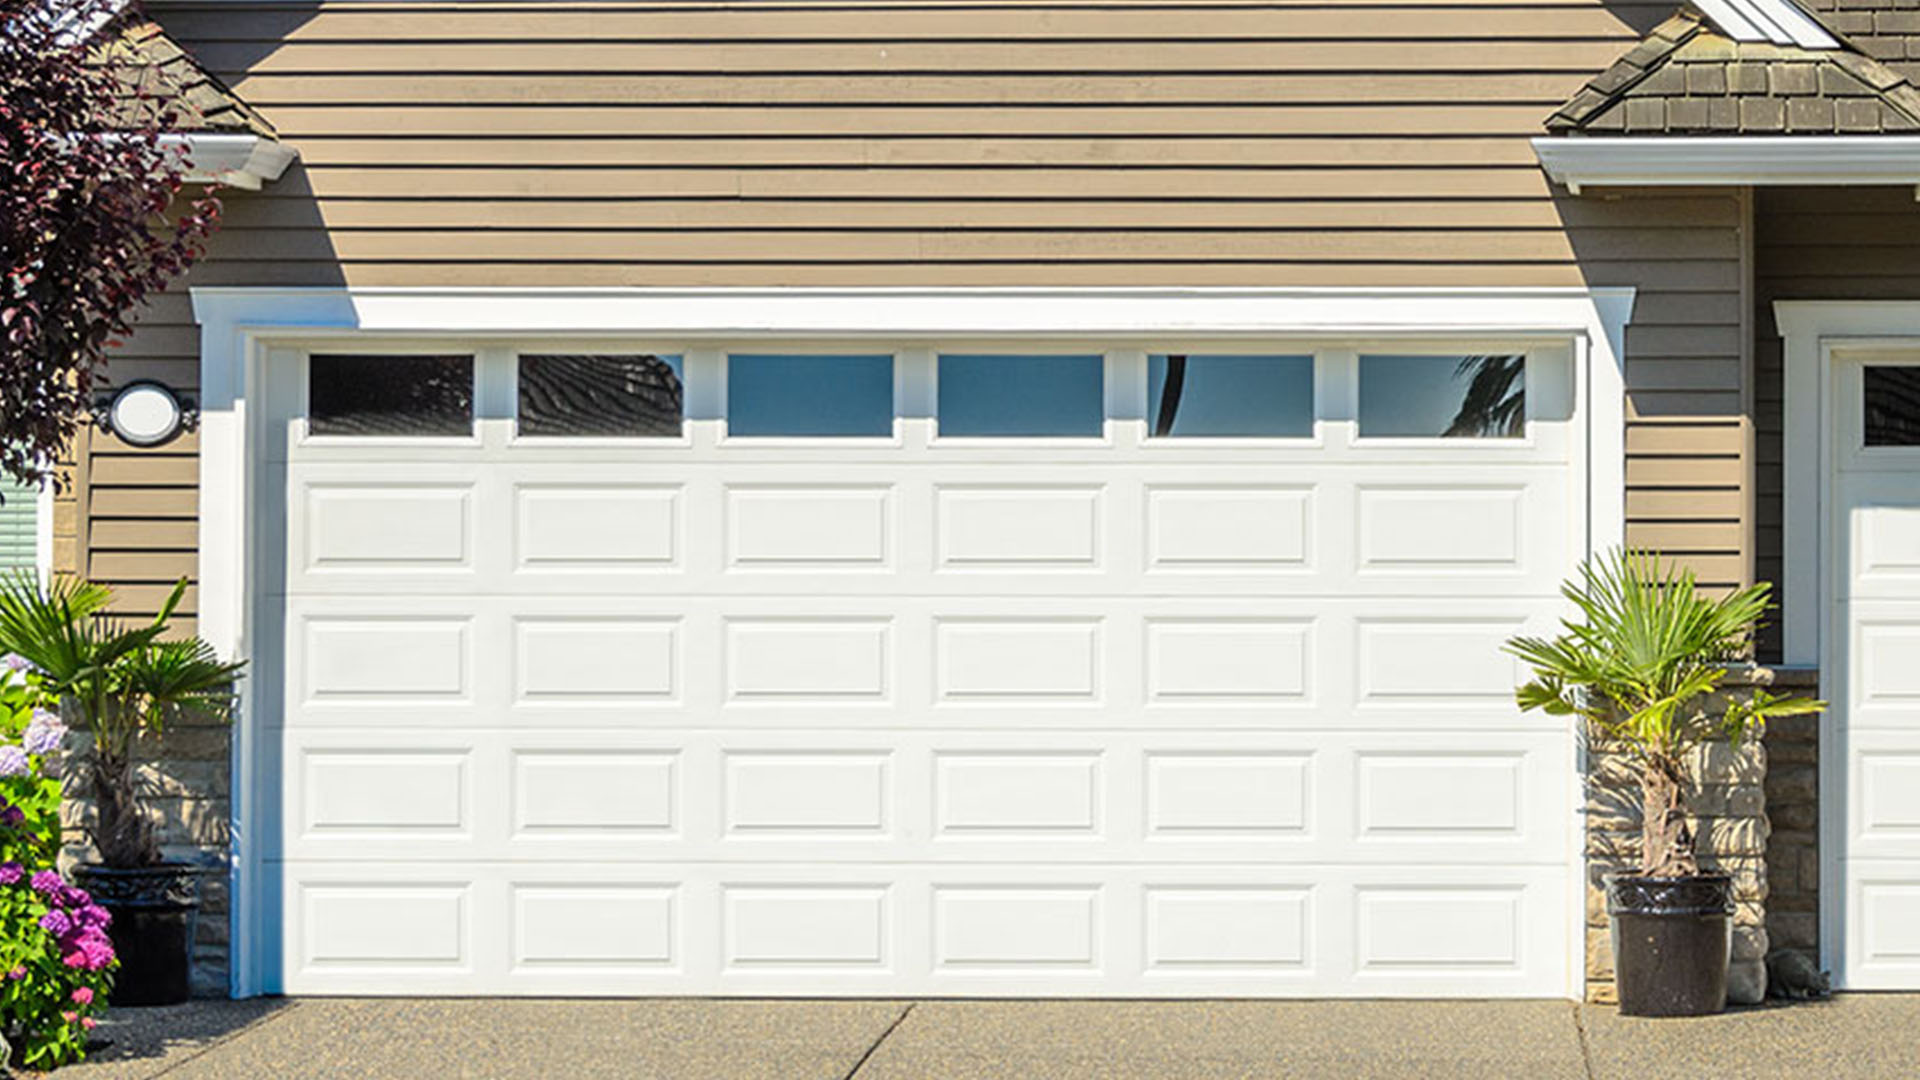 Tan garage with white door